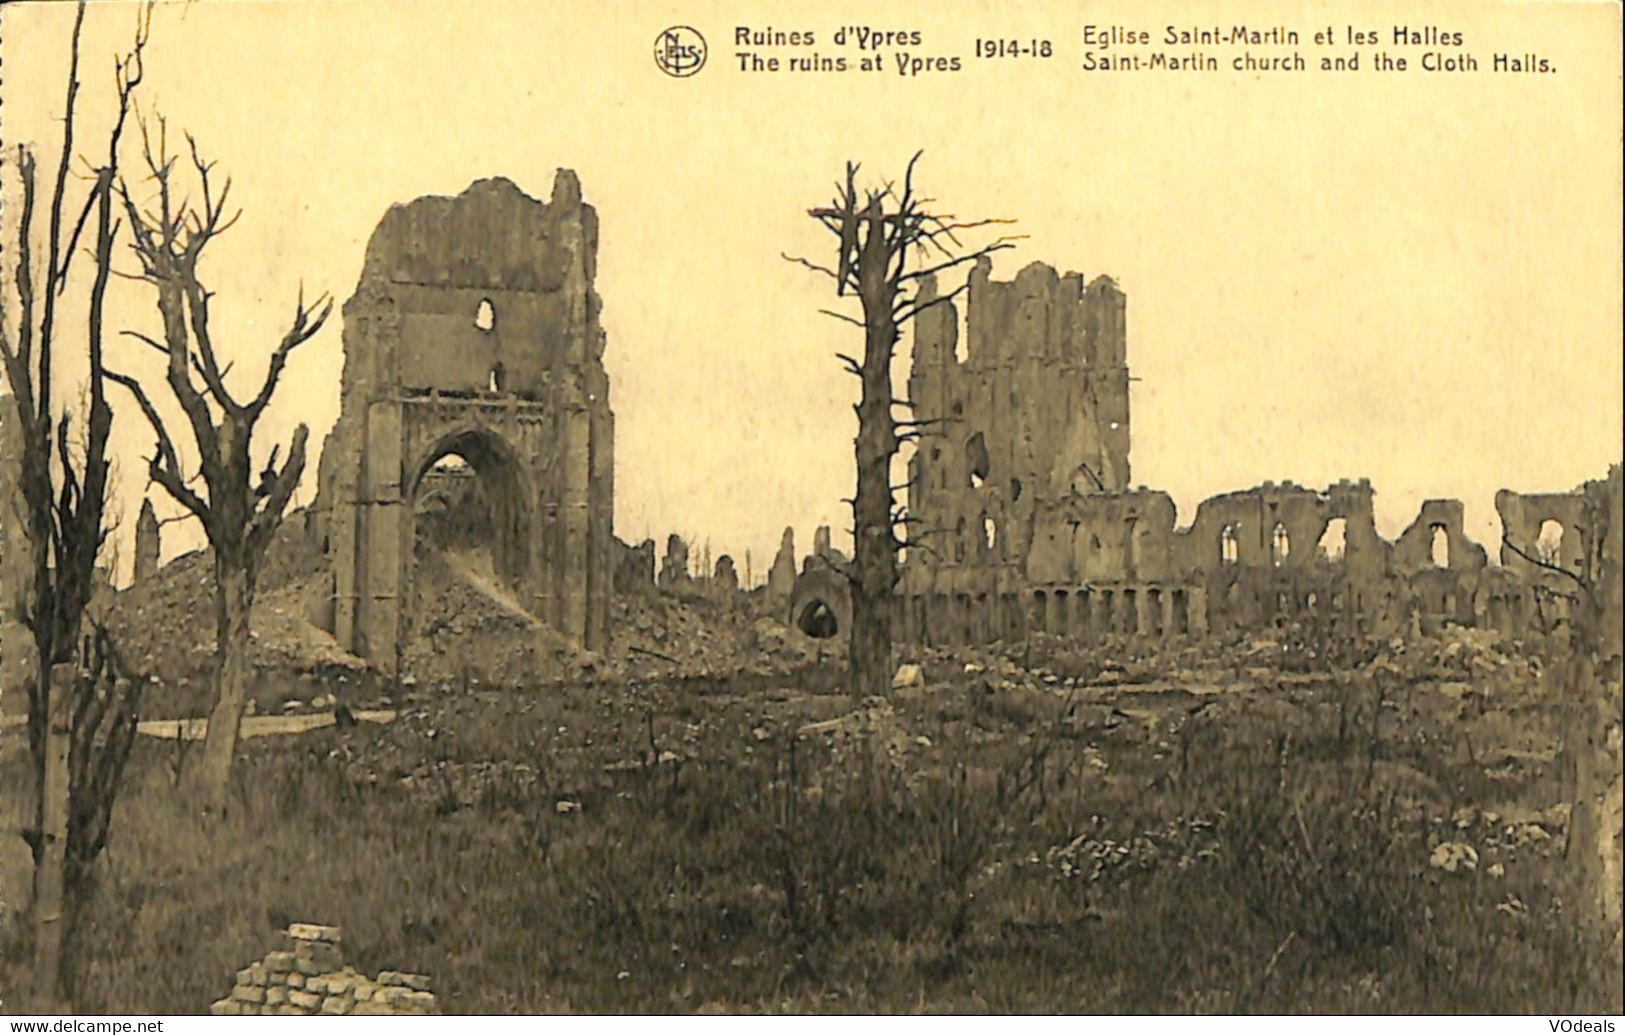 036 039 - CPA - Belgique - Ruines D'Ypres - 1914-18 - Eglise Saint-Martin Et Les Halles - Ieper